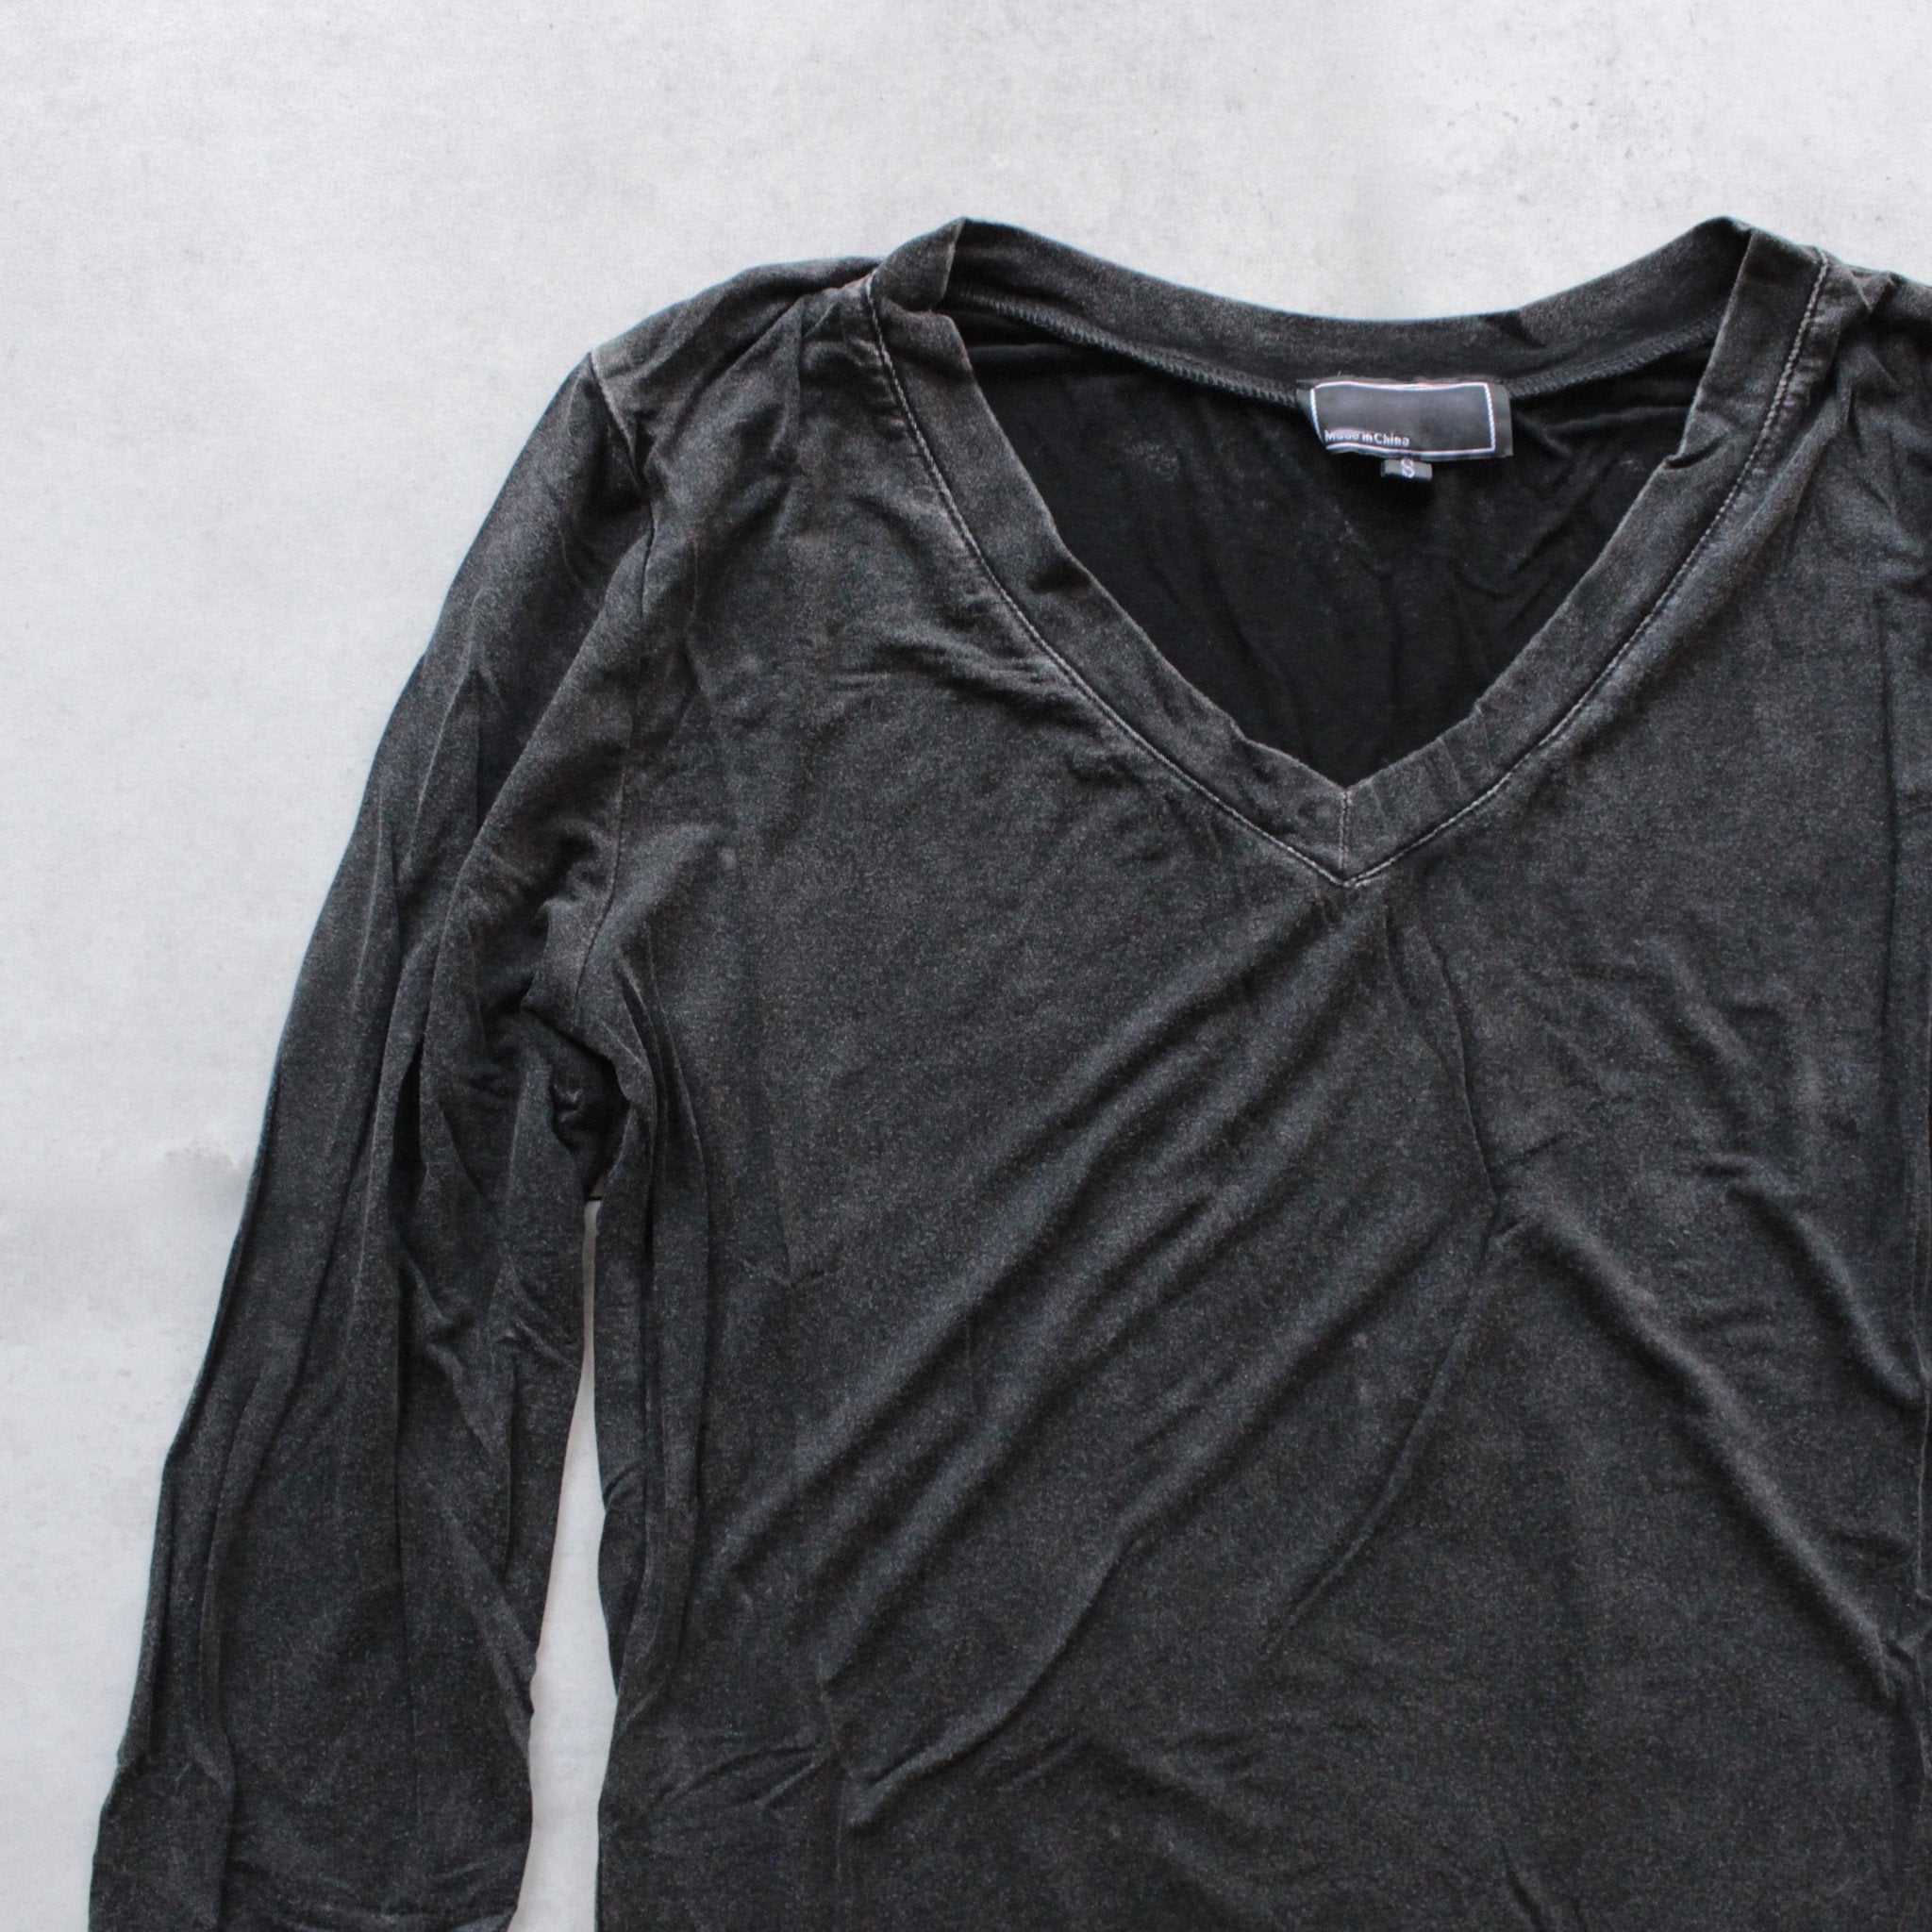 BSIC - Vintage Acid Wash V-Neck Long Sleeve Shirt in Black – Shop Hearts